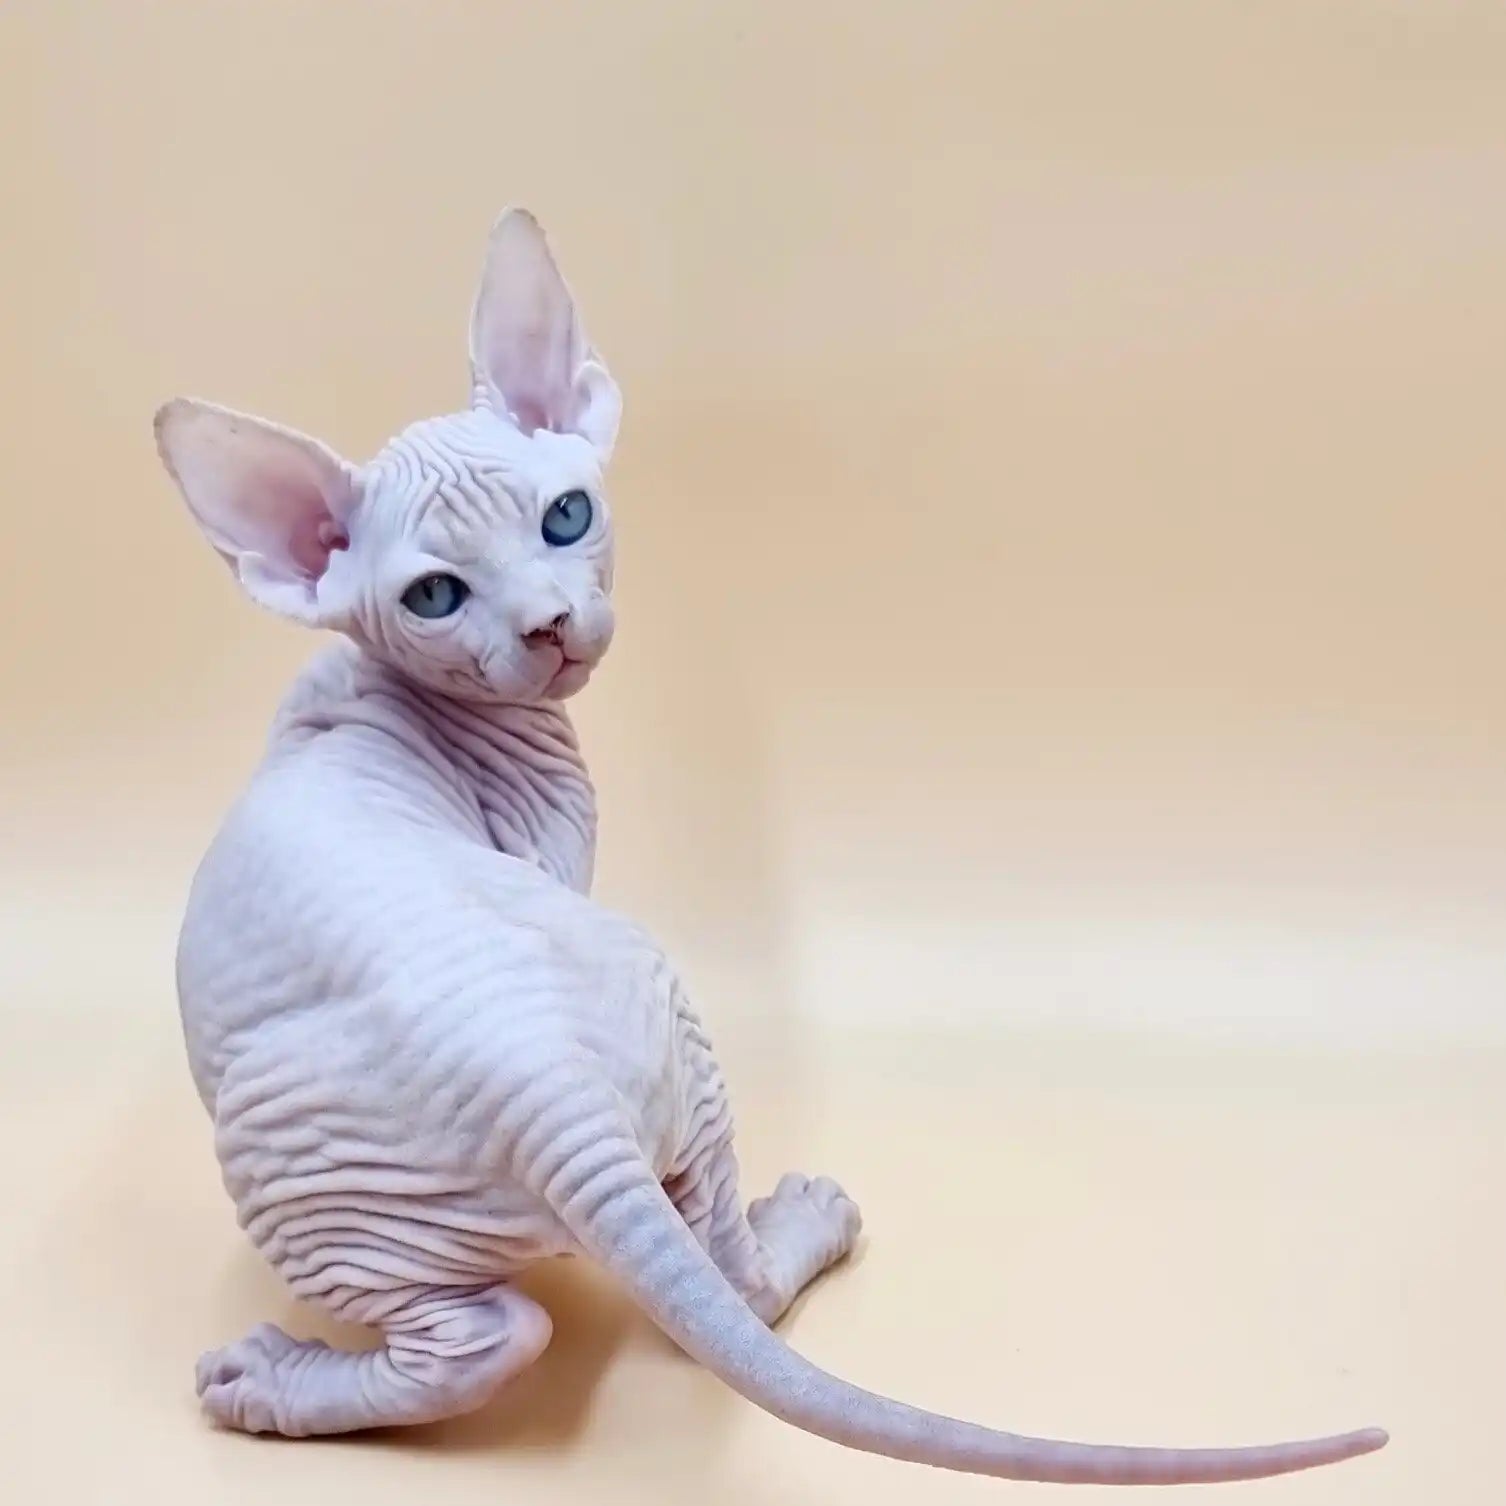 Sphynx Cats for Sale | Kittens For Tina | Kitten